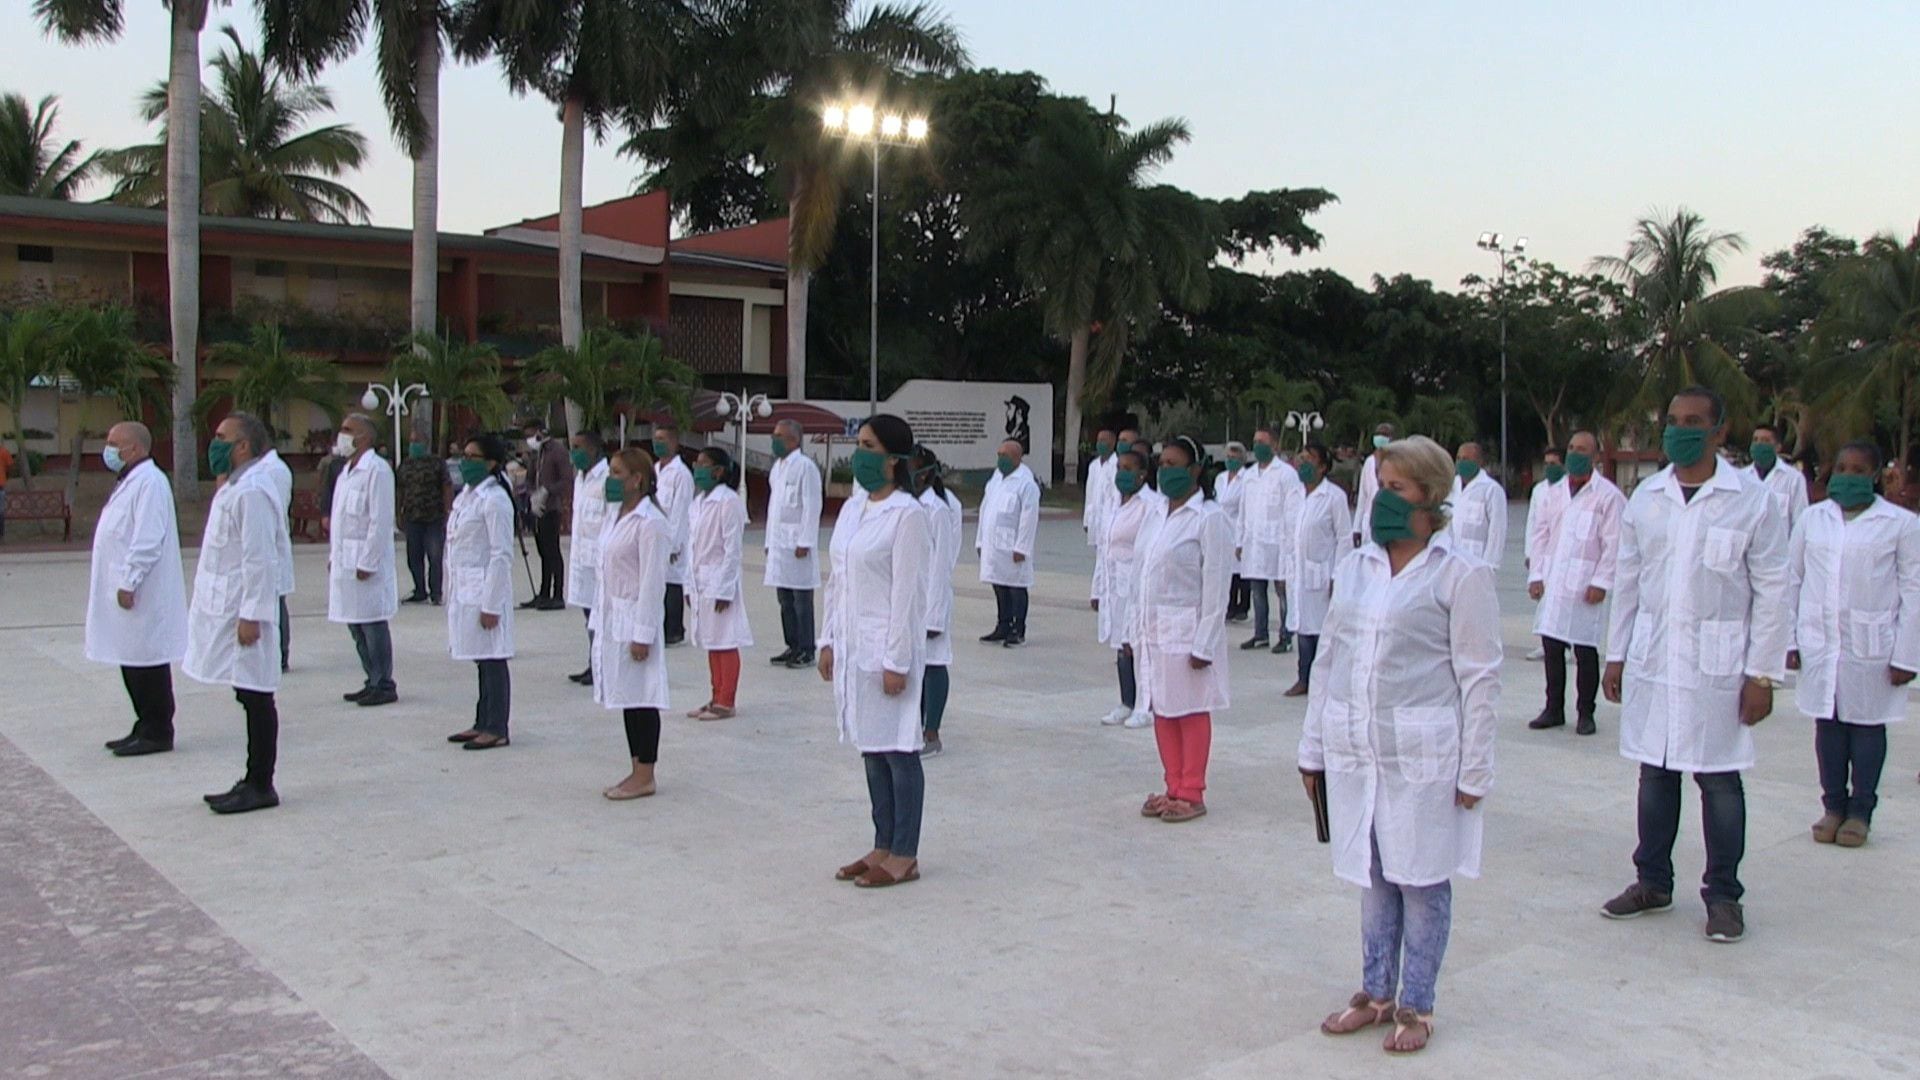 Cuba envió el sábado 39 médicos y paramédicos hacia Andorra, el segundo Estado europeo donde ayudarán contra la Covid-19, tras haber ido a Italia y a otras 11 naciones de América Latina y el Caribe.